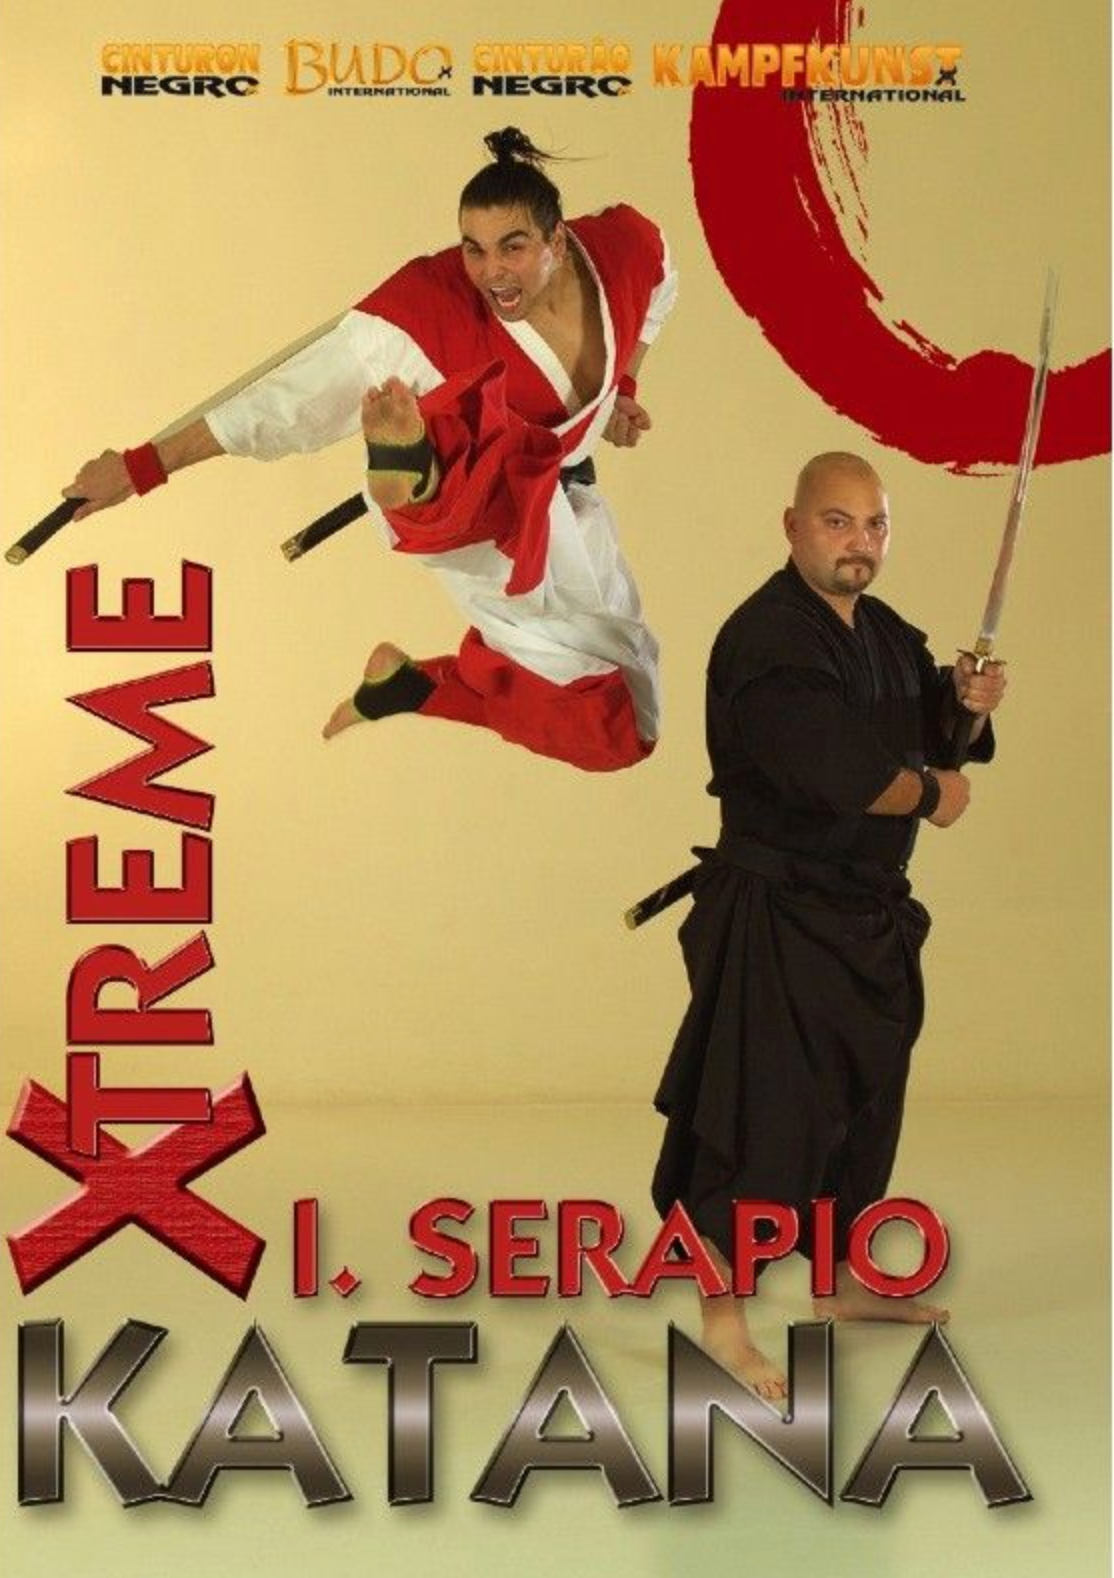 Extreme Katana DVD with Ignacio Serapio - Budovideos Inc